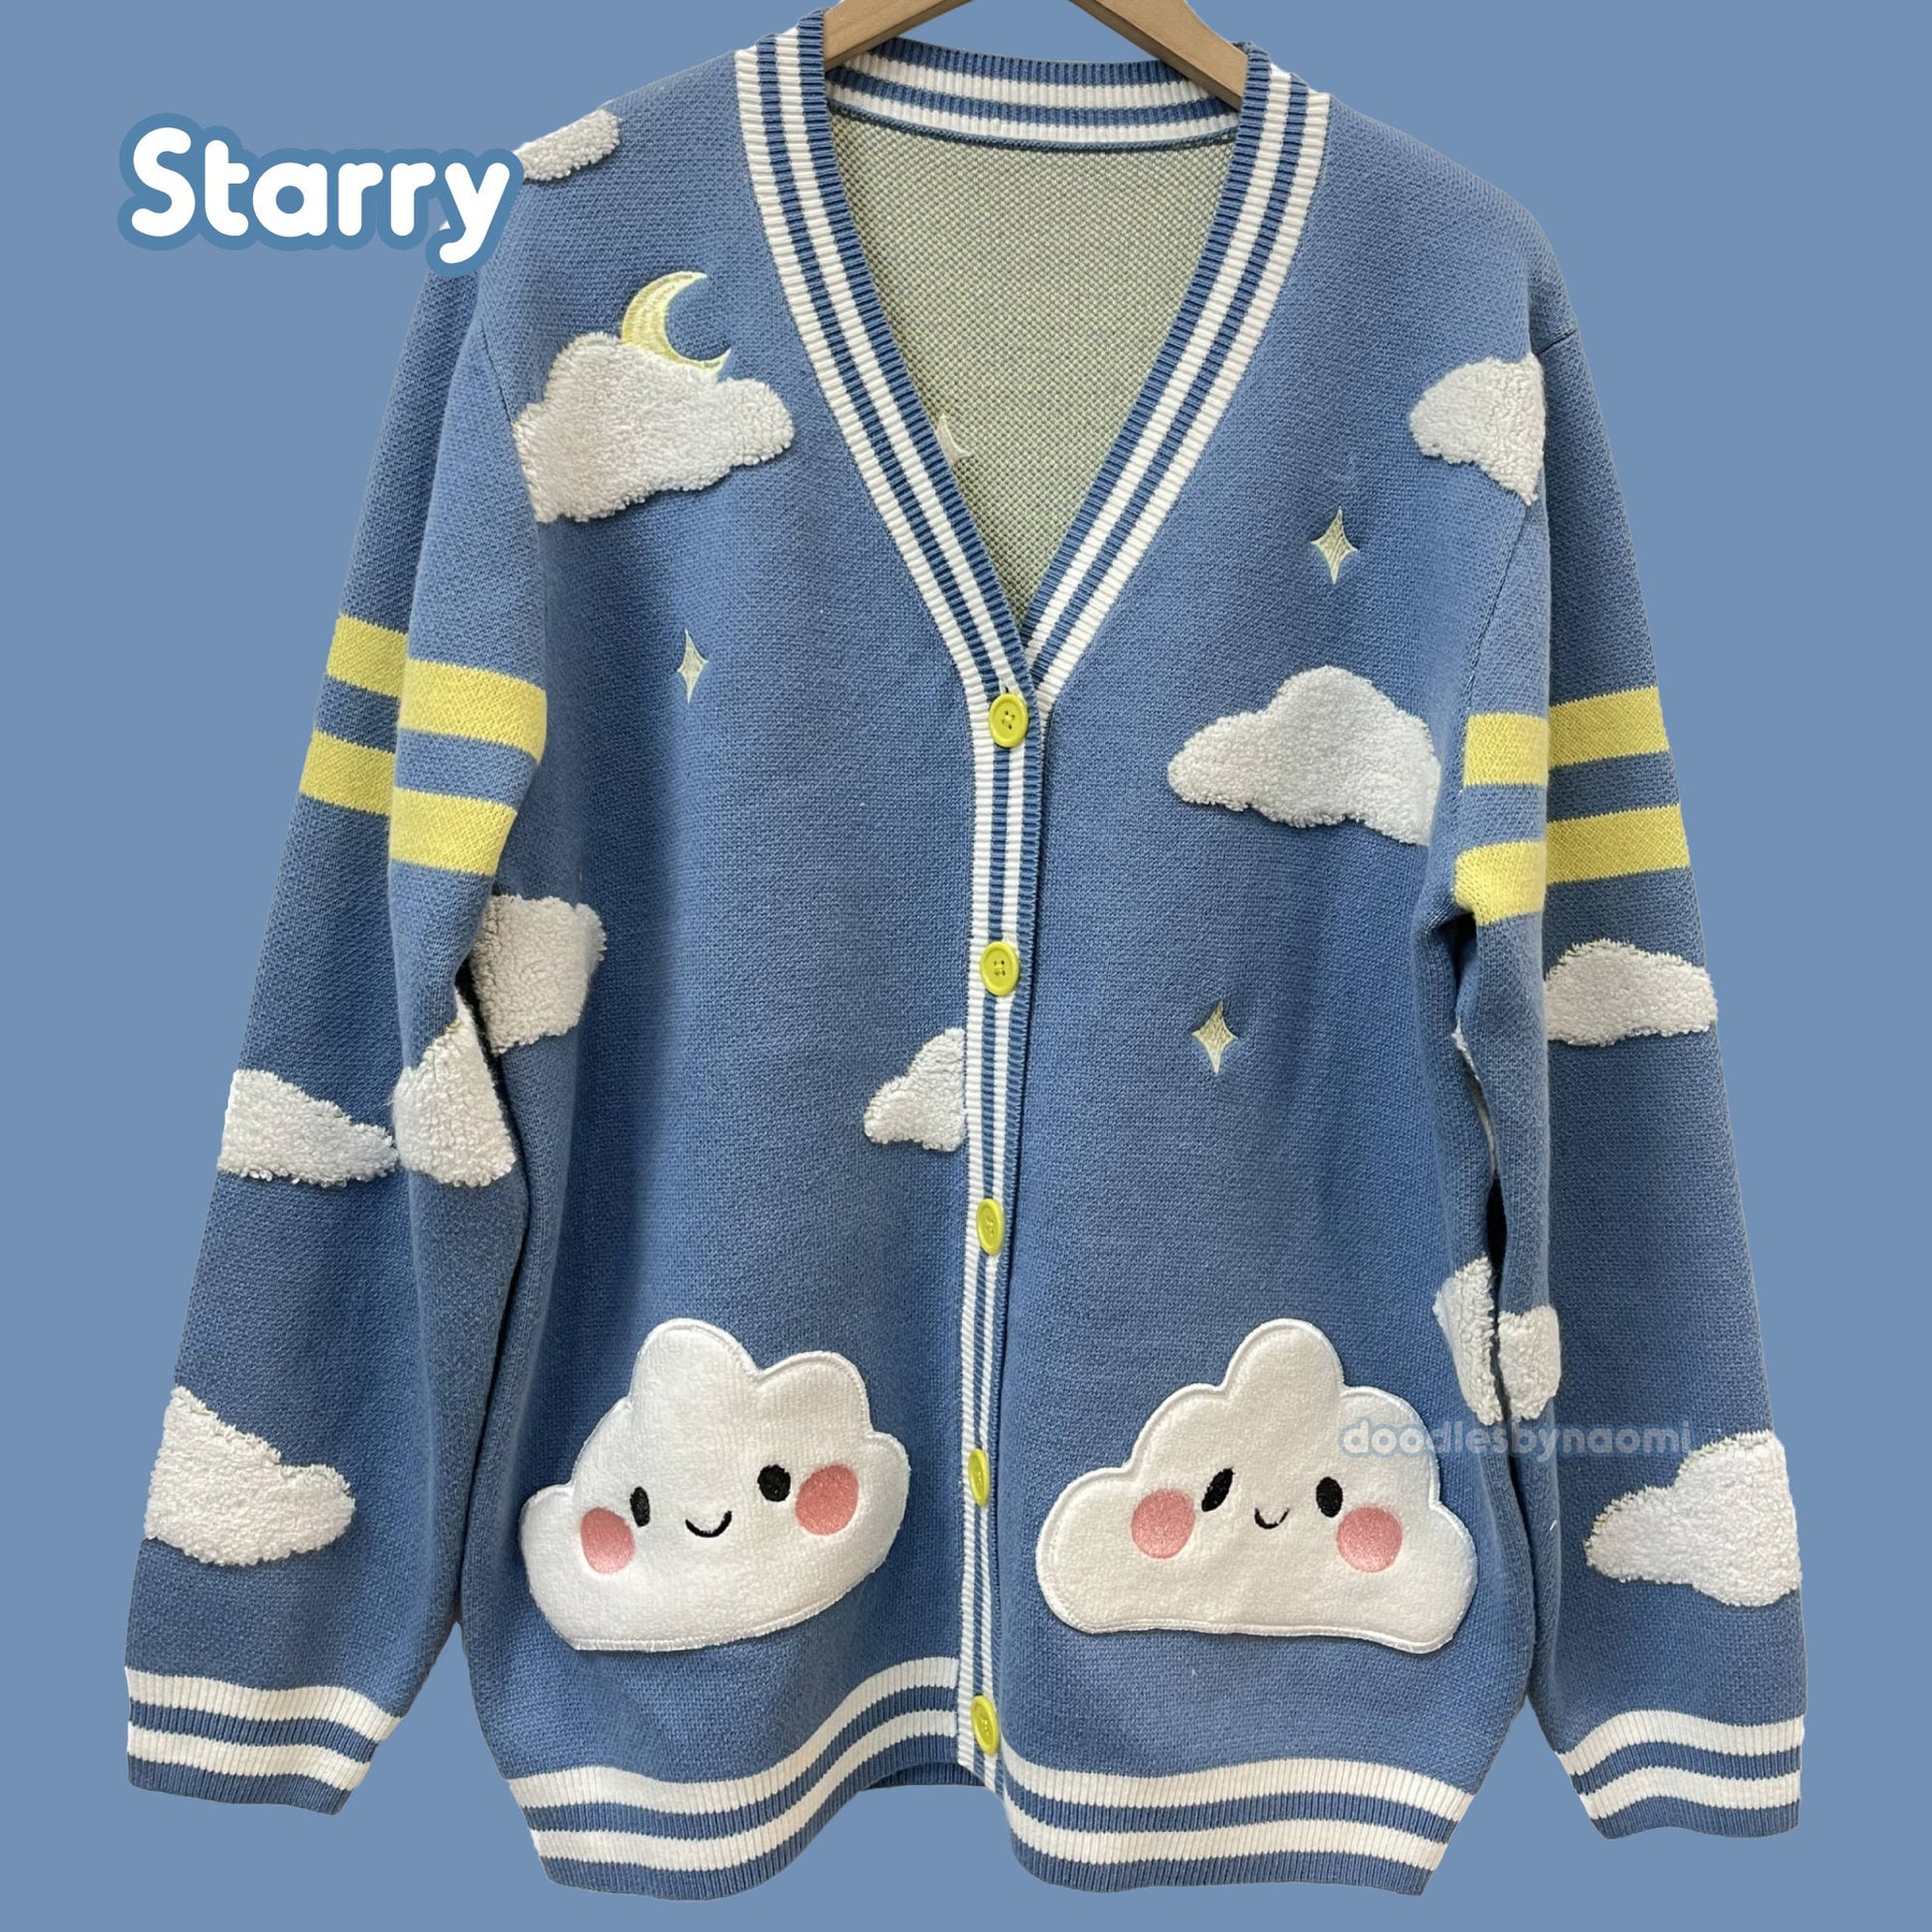 Sweater weather cardigans | Cloud cardigan | Cute cardigan | Kawaii apparel (Please read description)